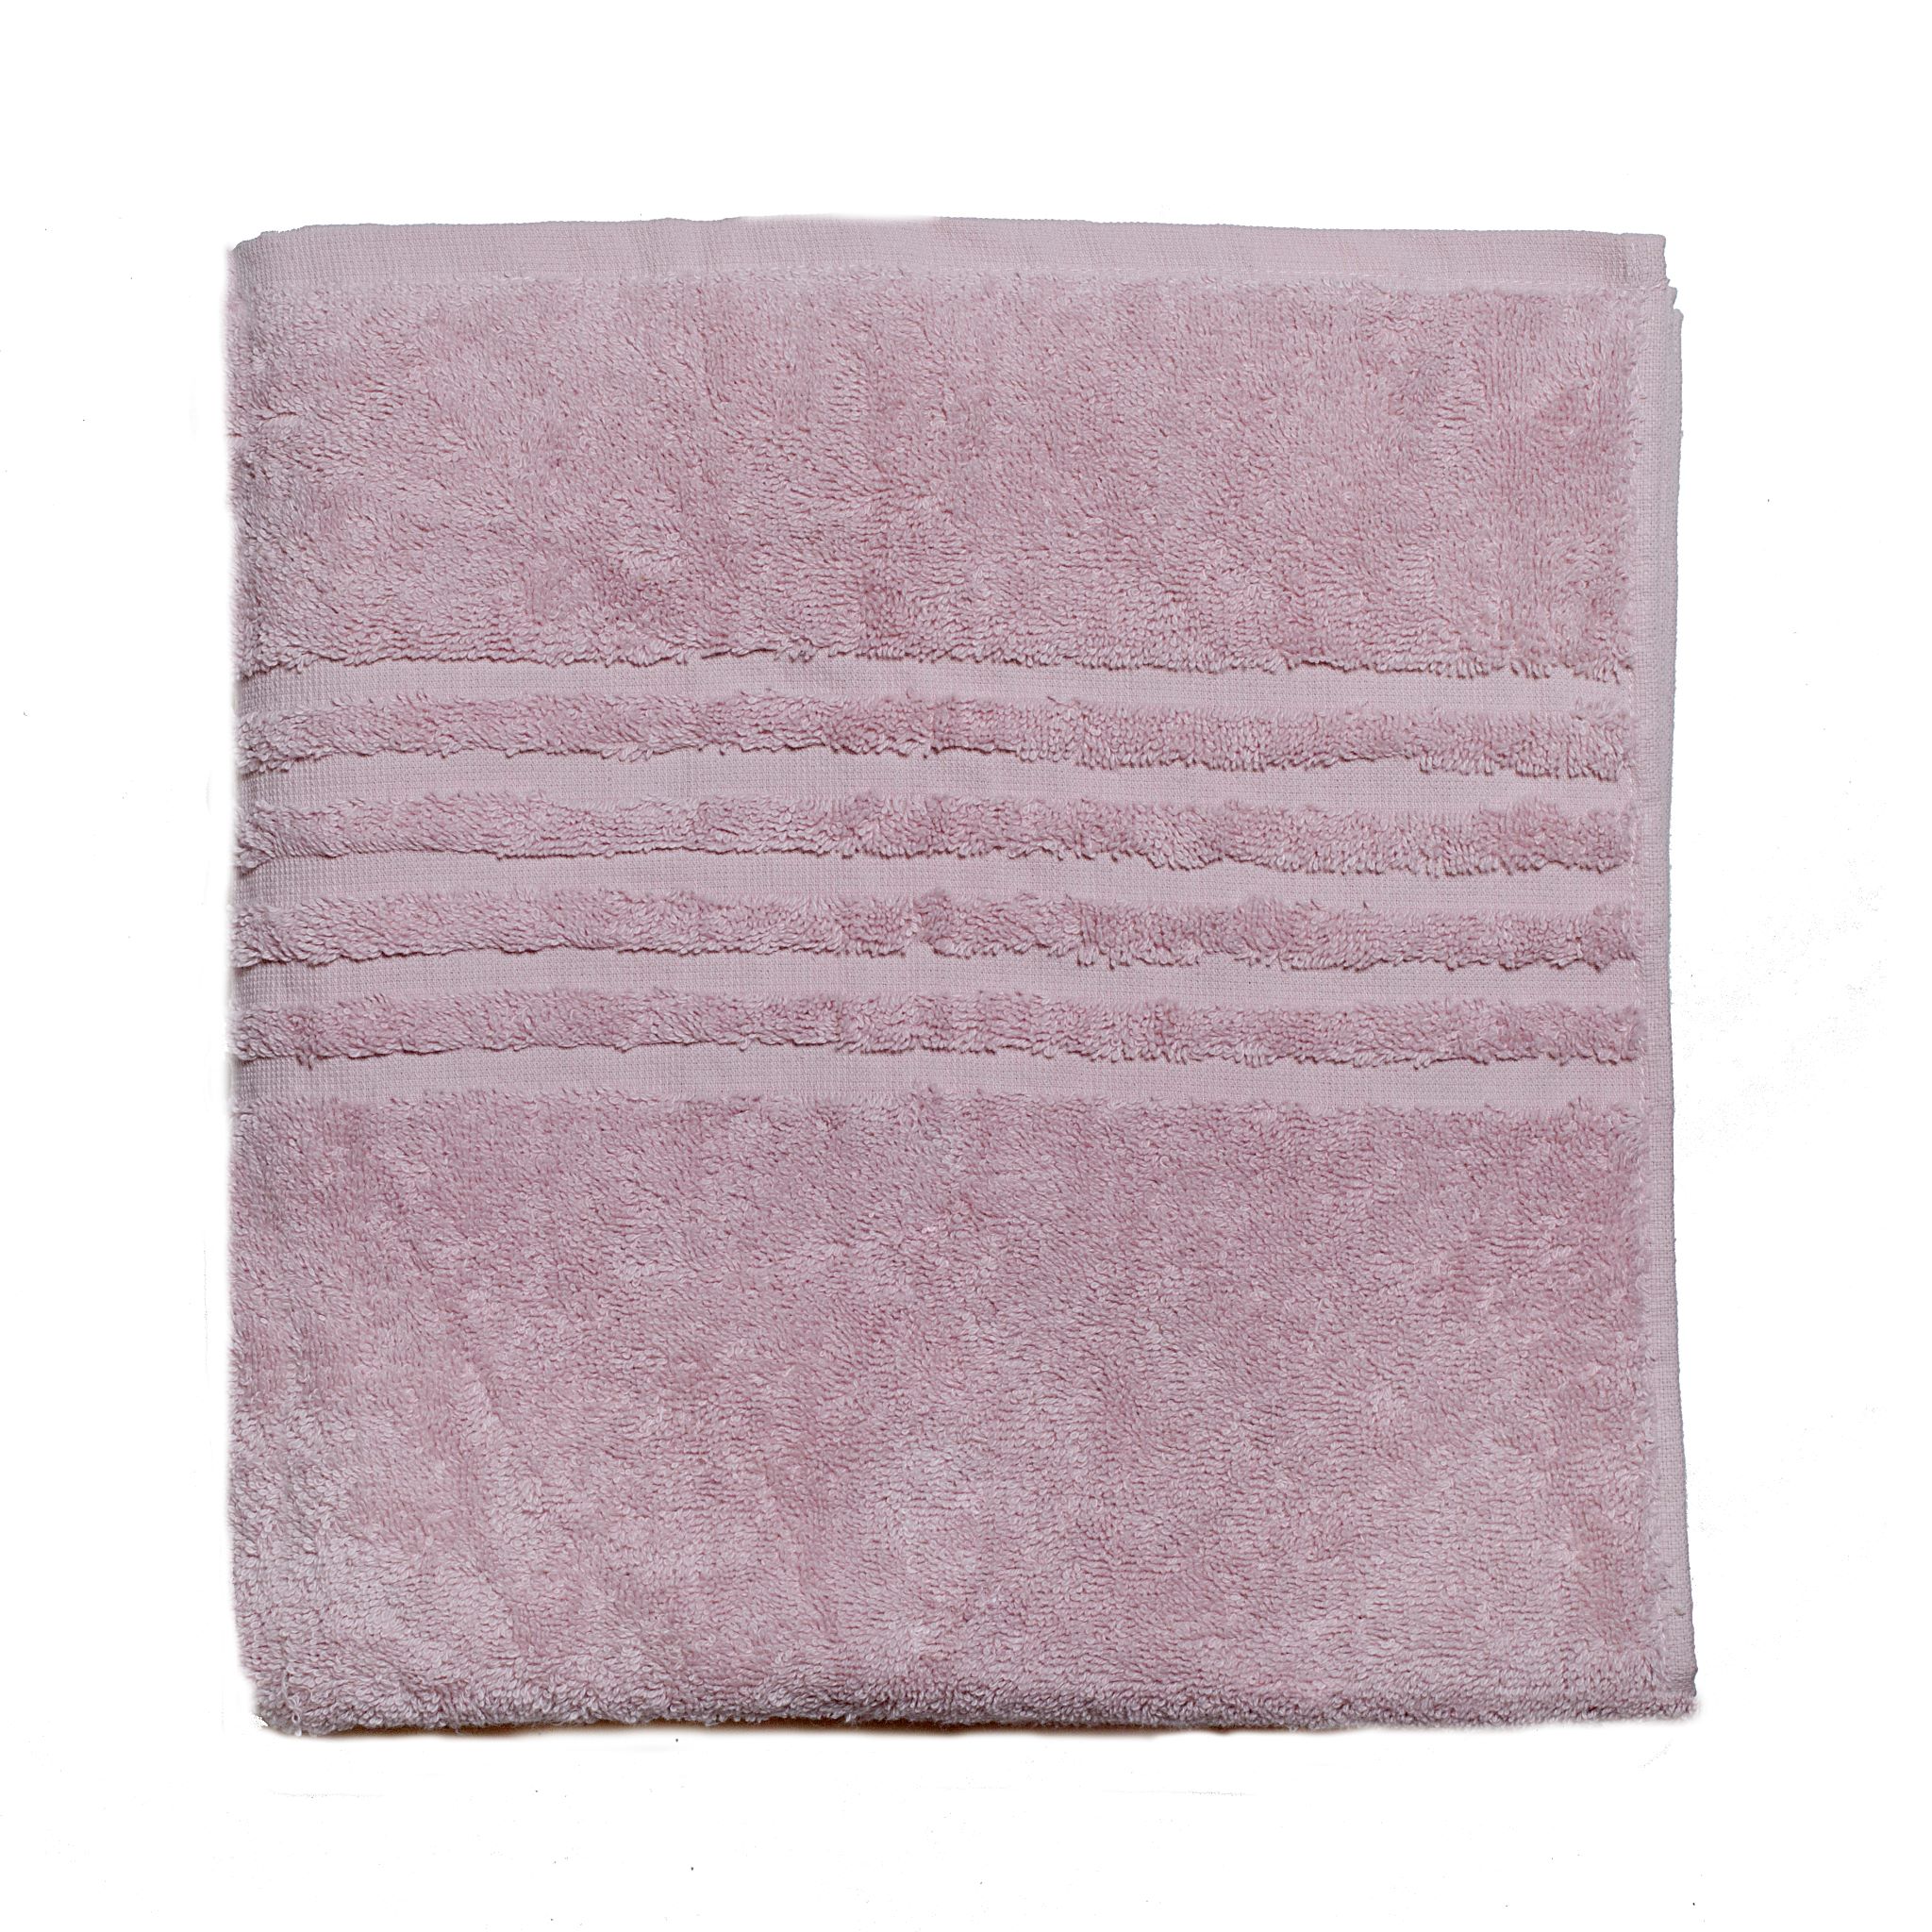 Deuk Vervolgen professioneel iSeng Handdoek (50x100cm) Roze – Kessels Home Textiles